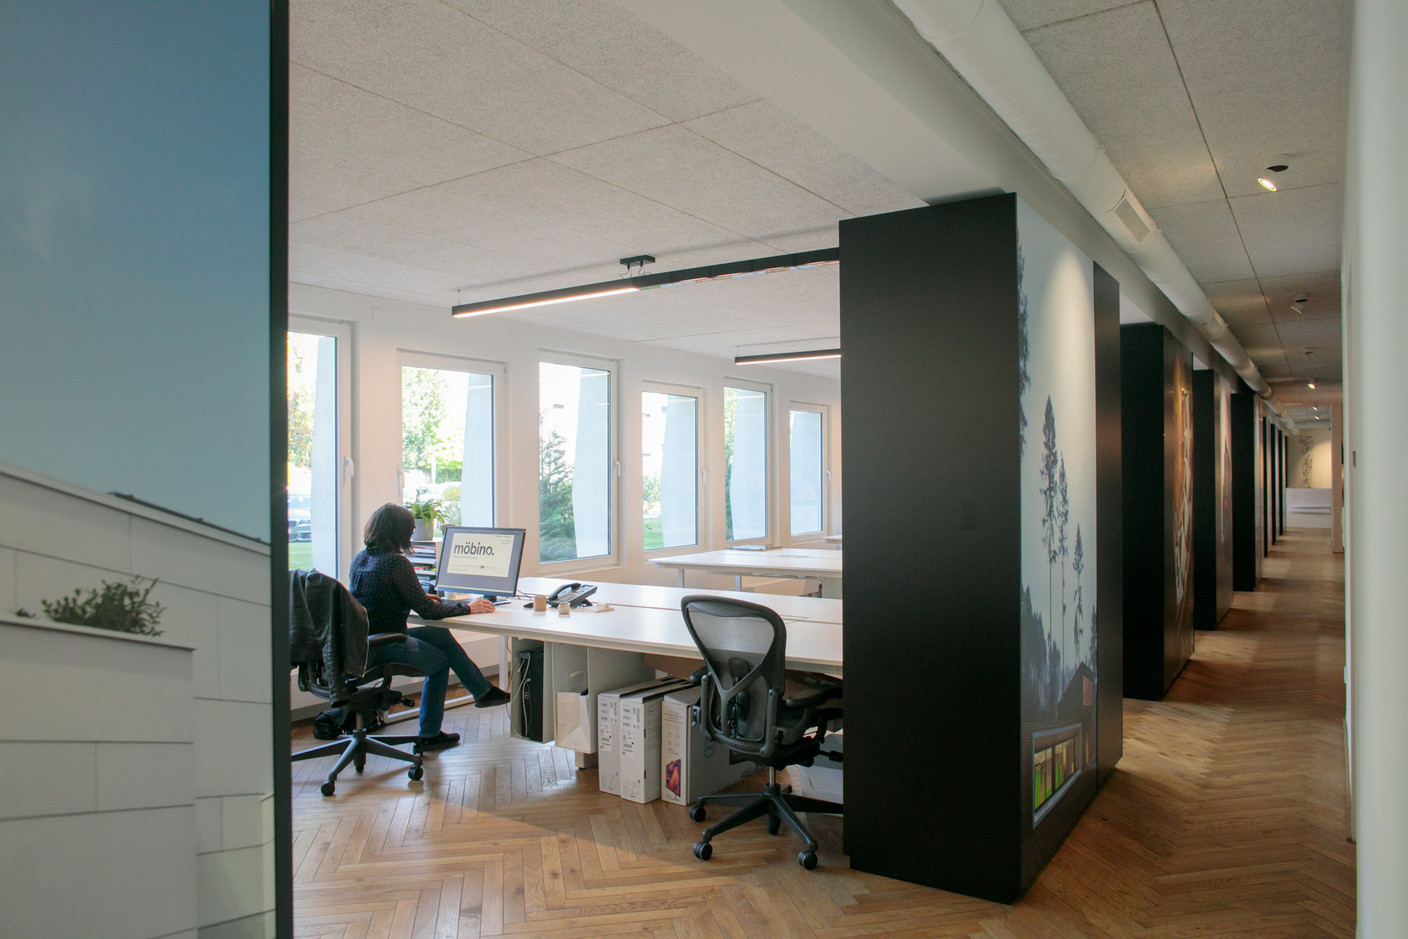 Les espaces de bureaux sont répartis tout au long d’un couloir dont la circulation reste ouverte et fluide. (Photo: Matic Zorman/Maison Moderne)